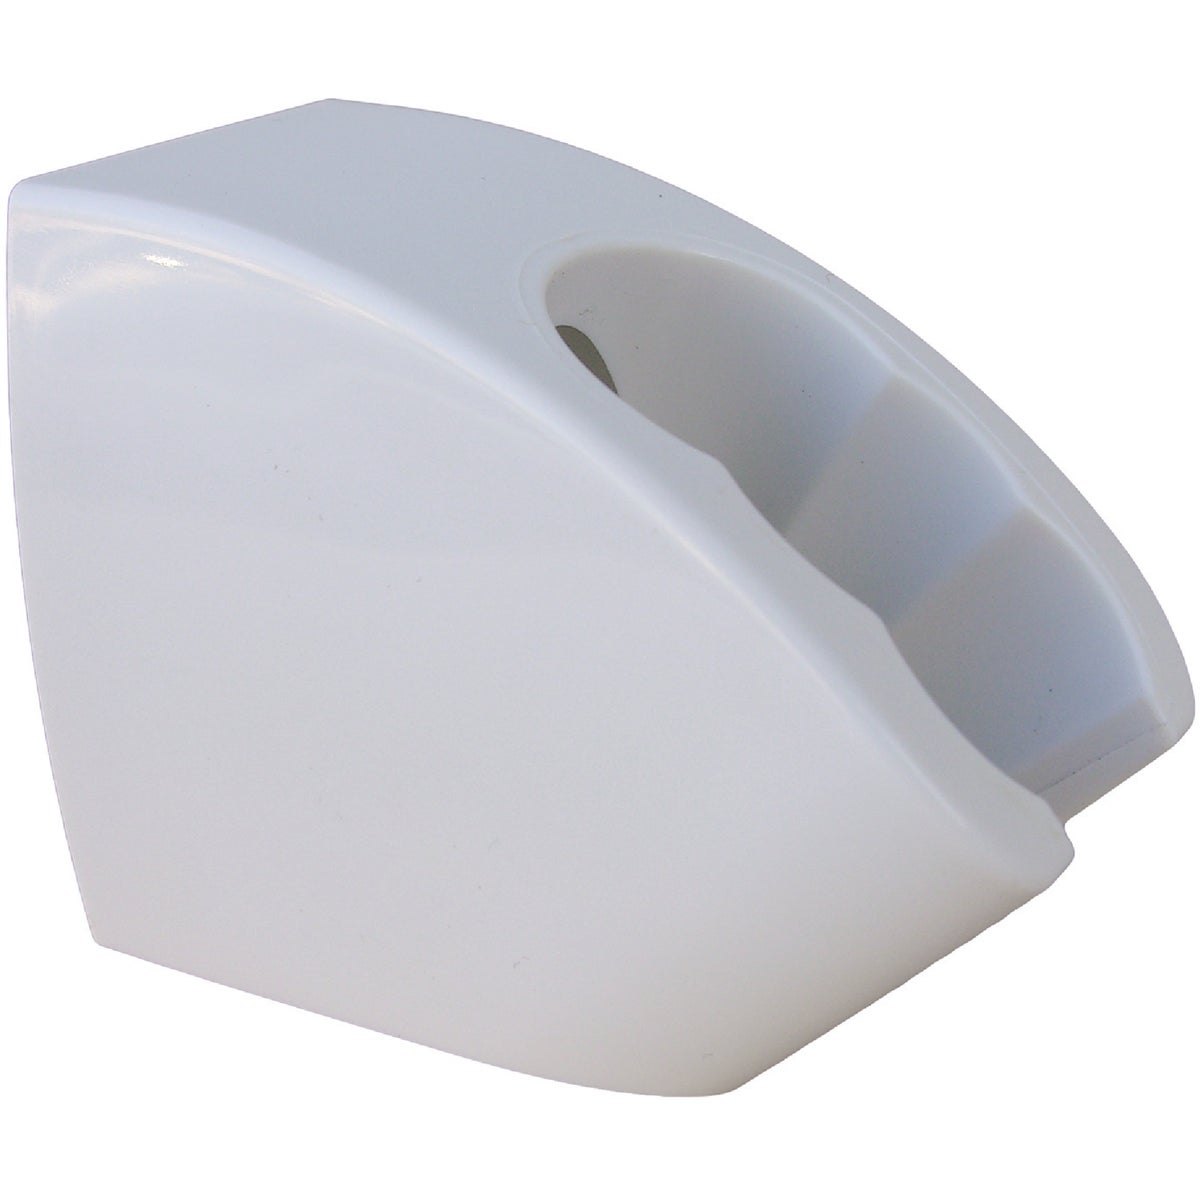 Lasco White Plastic 3-Position Wall Mount Shower Bracket